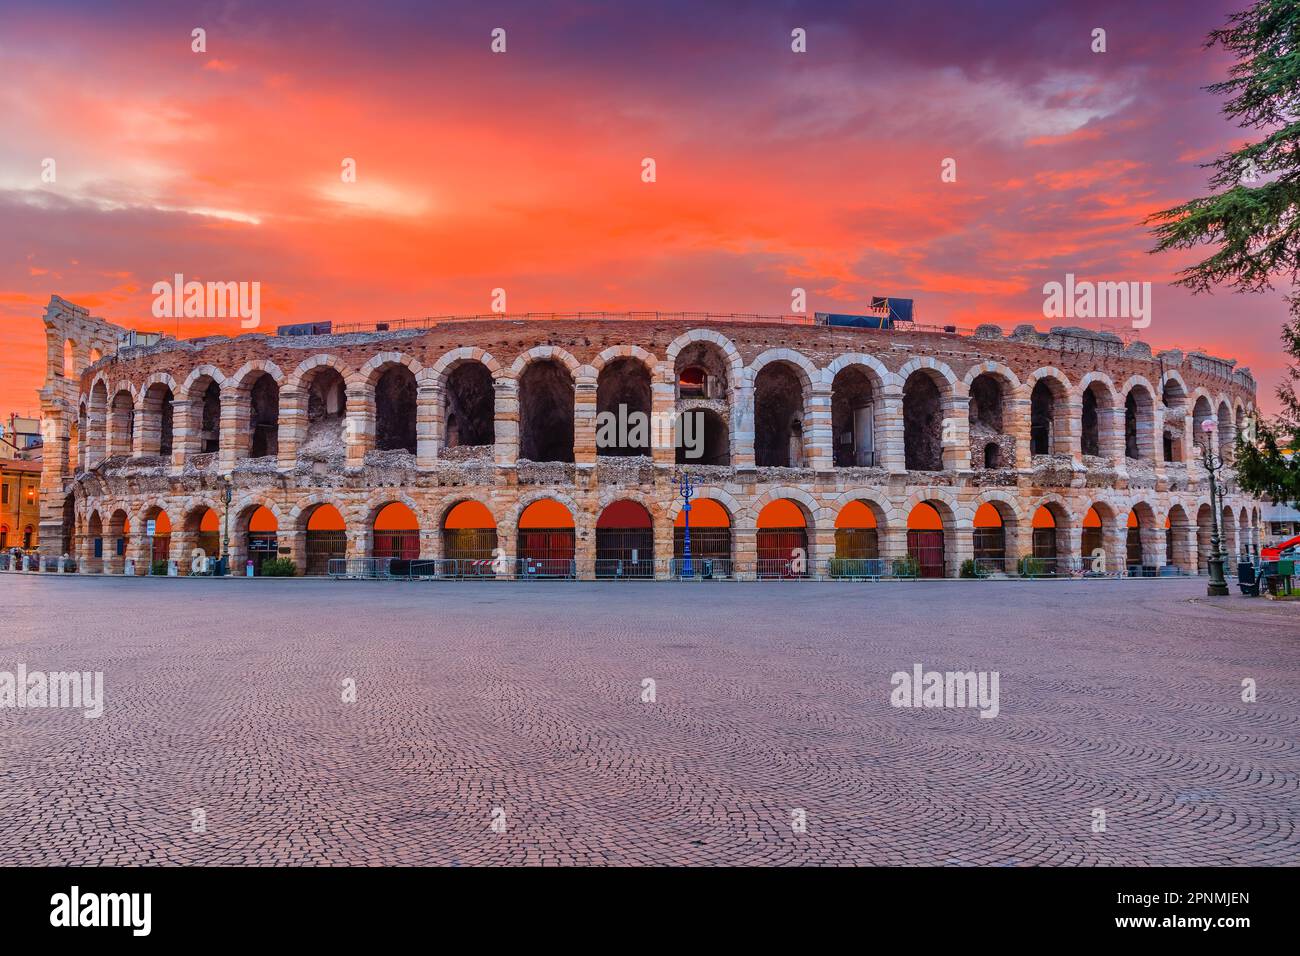 Verona, Italia. L'Arena di Verona, anfiteatro romano in Piazza Bra all'alba. Foto Stock